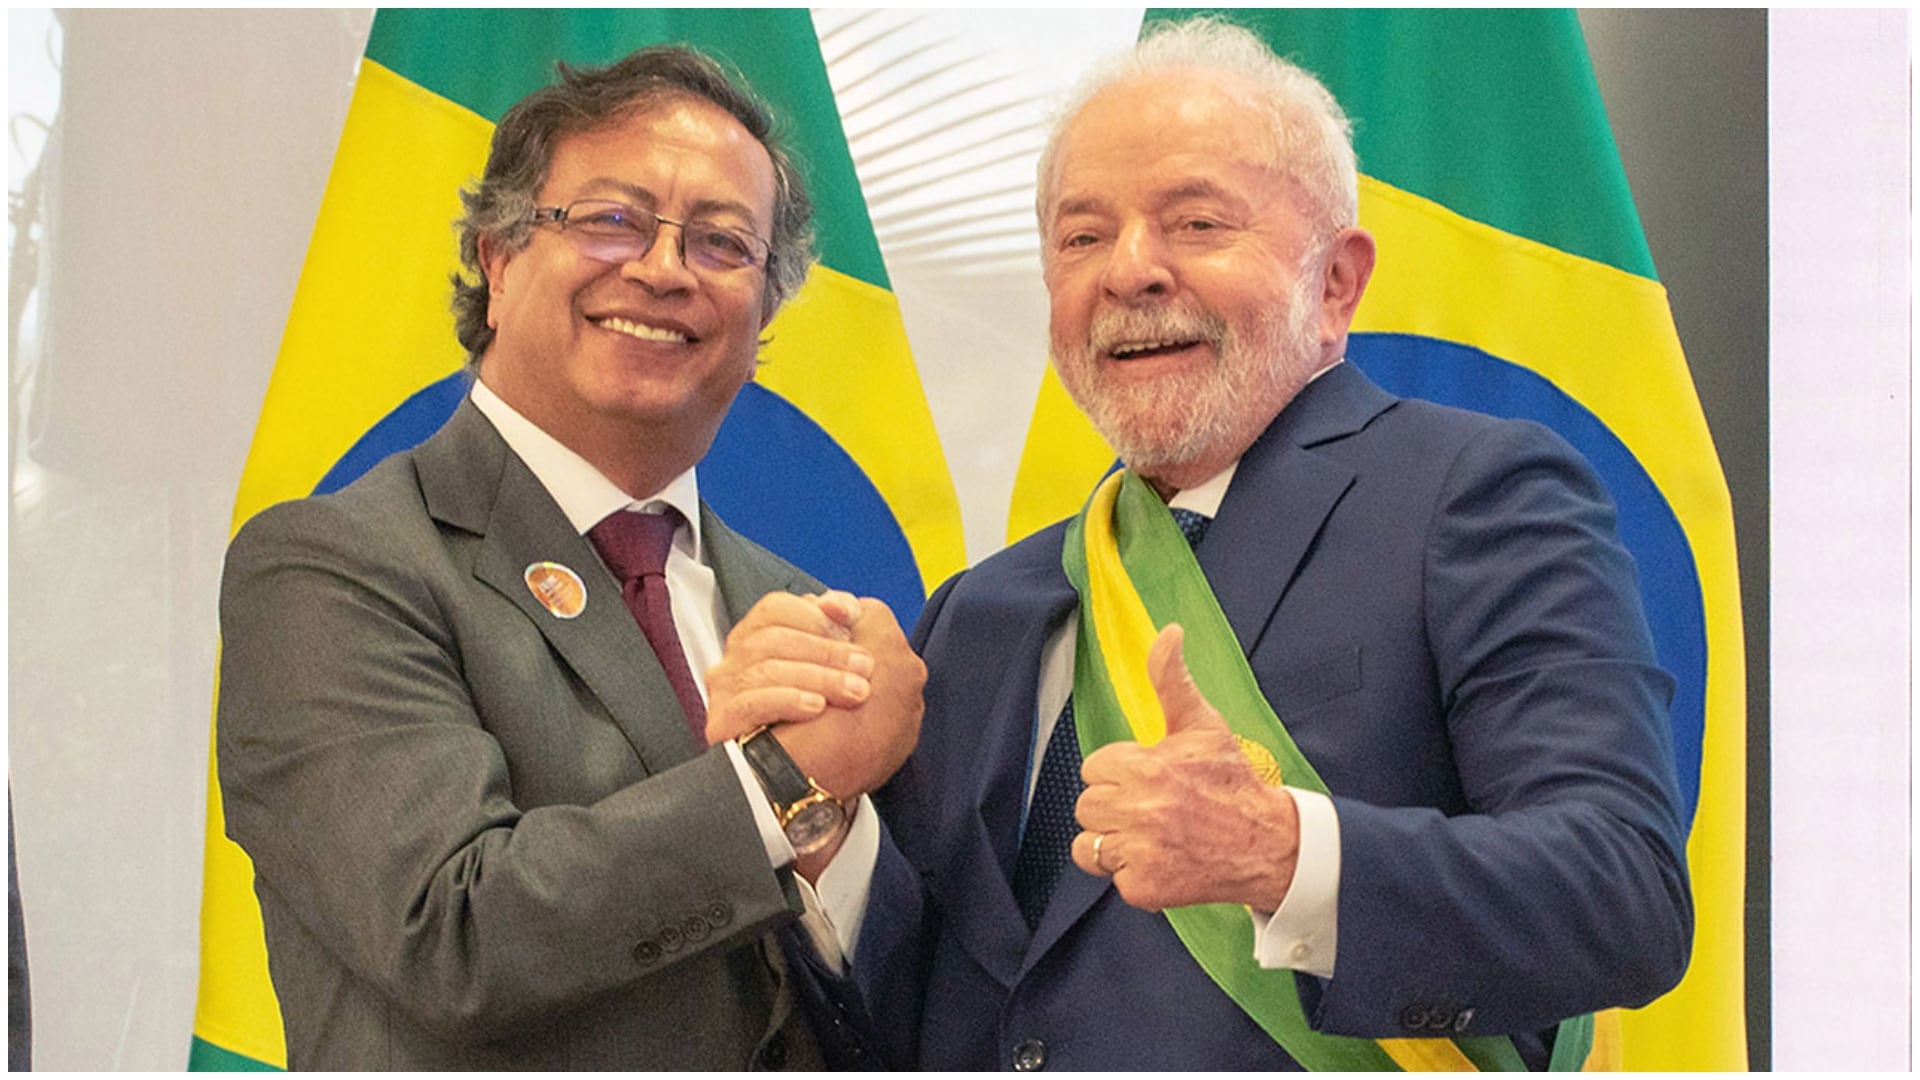 Encuentro Histórico: Petro y Lula, presidentes de Colombia y Brasil, inician diálogo en la Casa de Nariño (Foto de los mandatarios saludando, tomada por: Presidencia de Colombia)